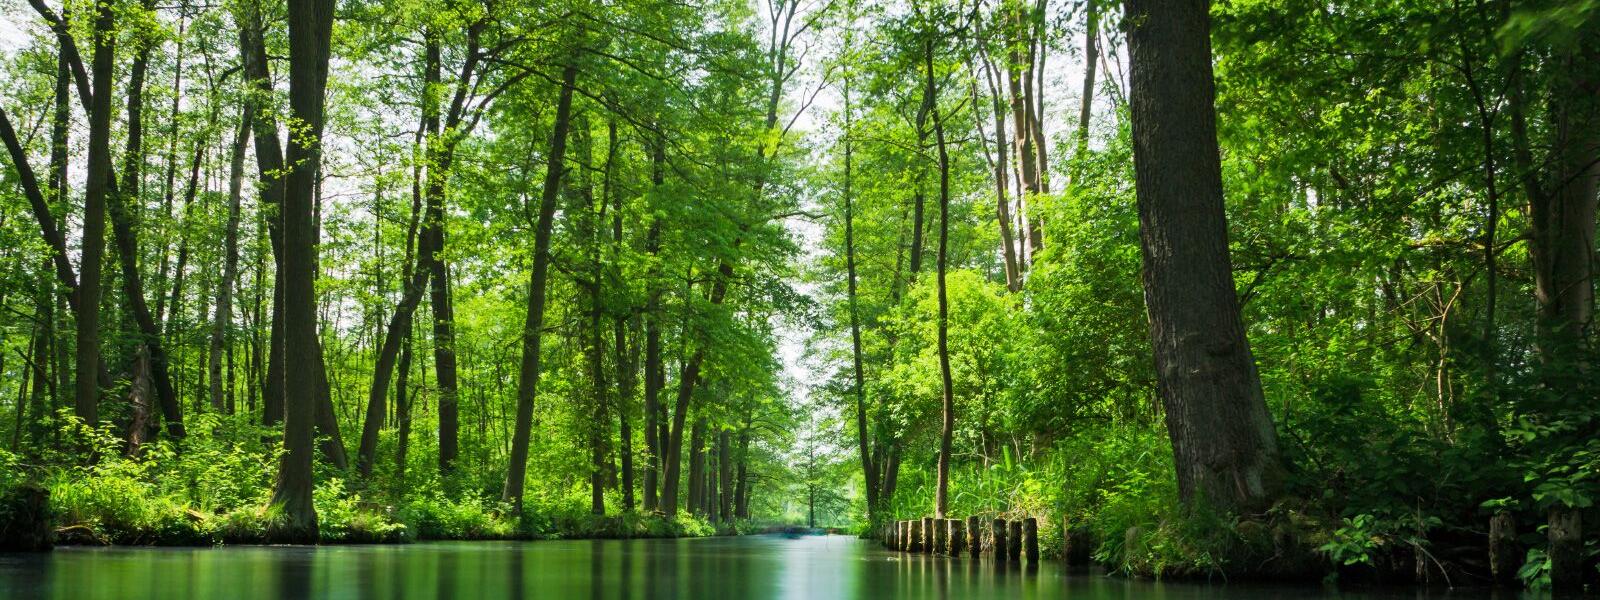 Spreewald: Von Wald gesäumter Kanal